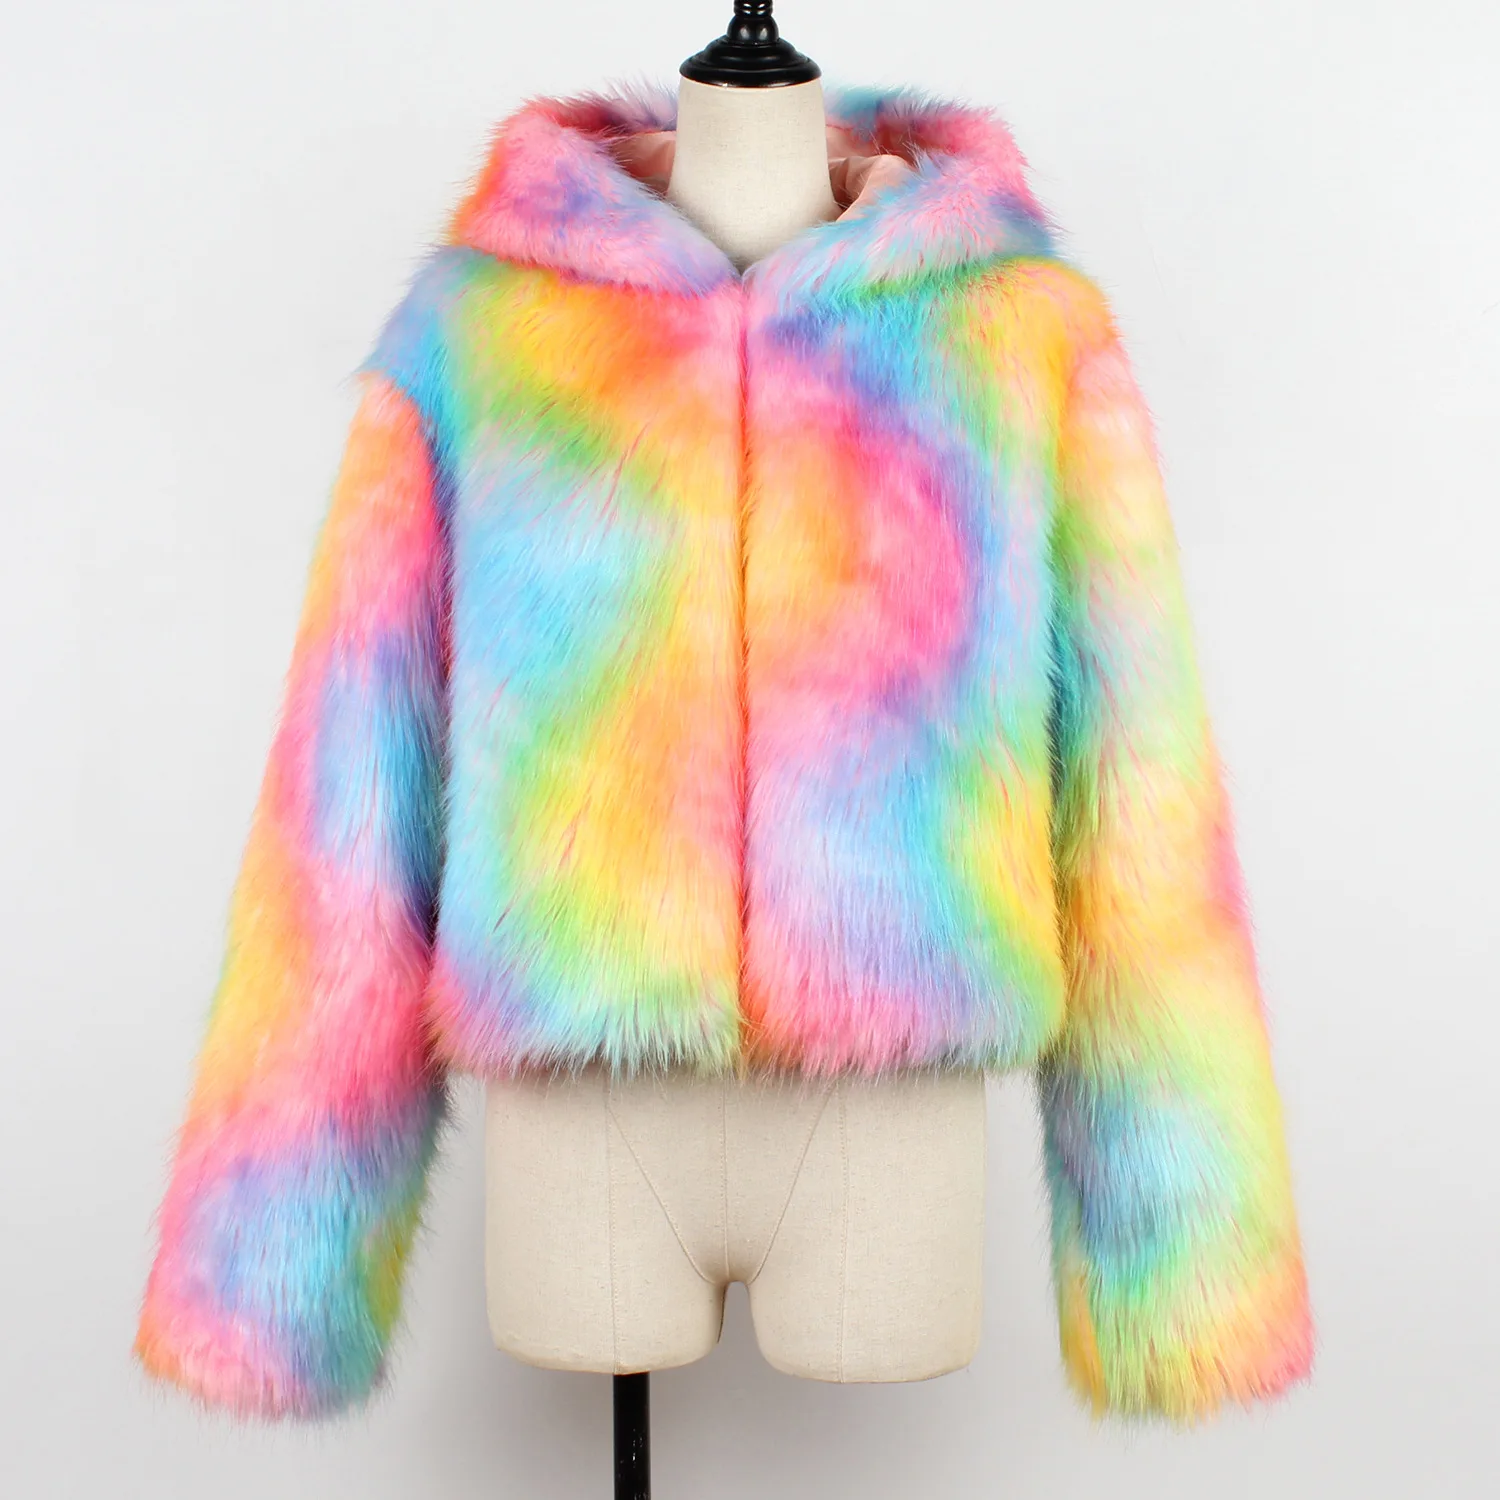 XIKOI/красочное зимнее пальто с мехом женские шубы из искусственного меха плюс размер 3X Толстая теплая меховая куртка с капюшоном Женская пушистая куртка с длинными рукавами